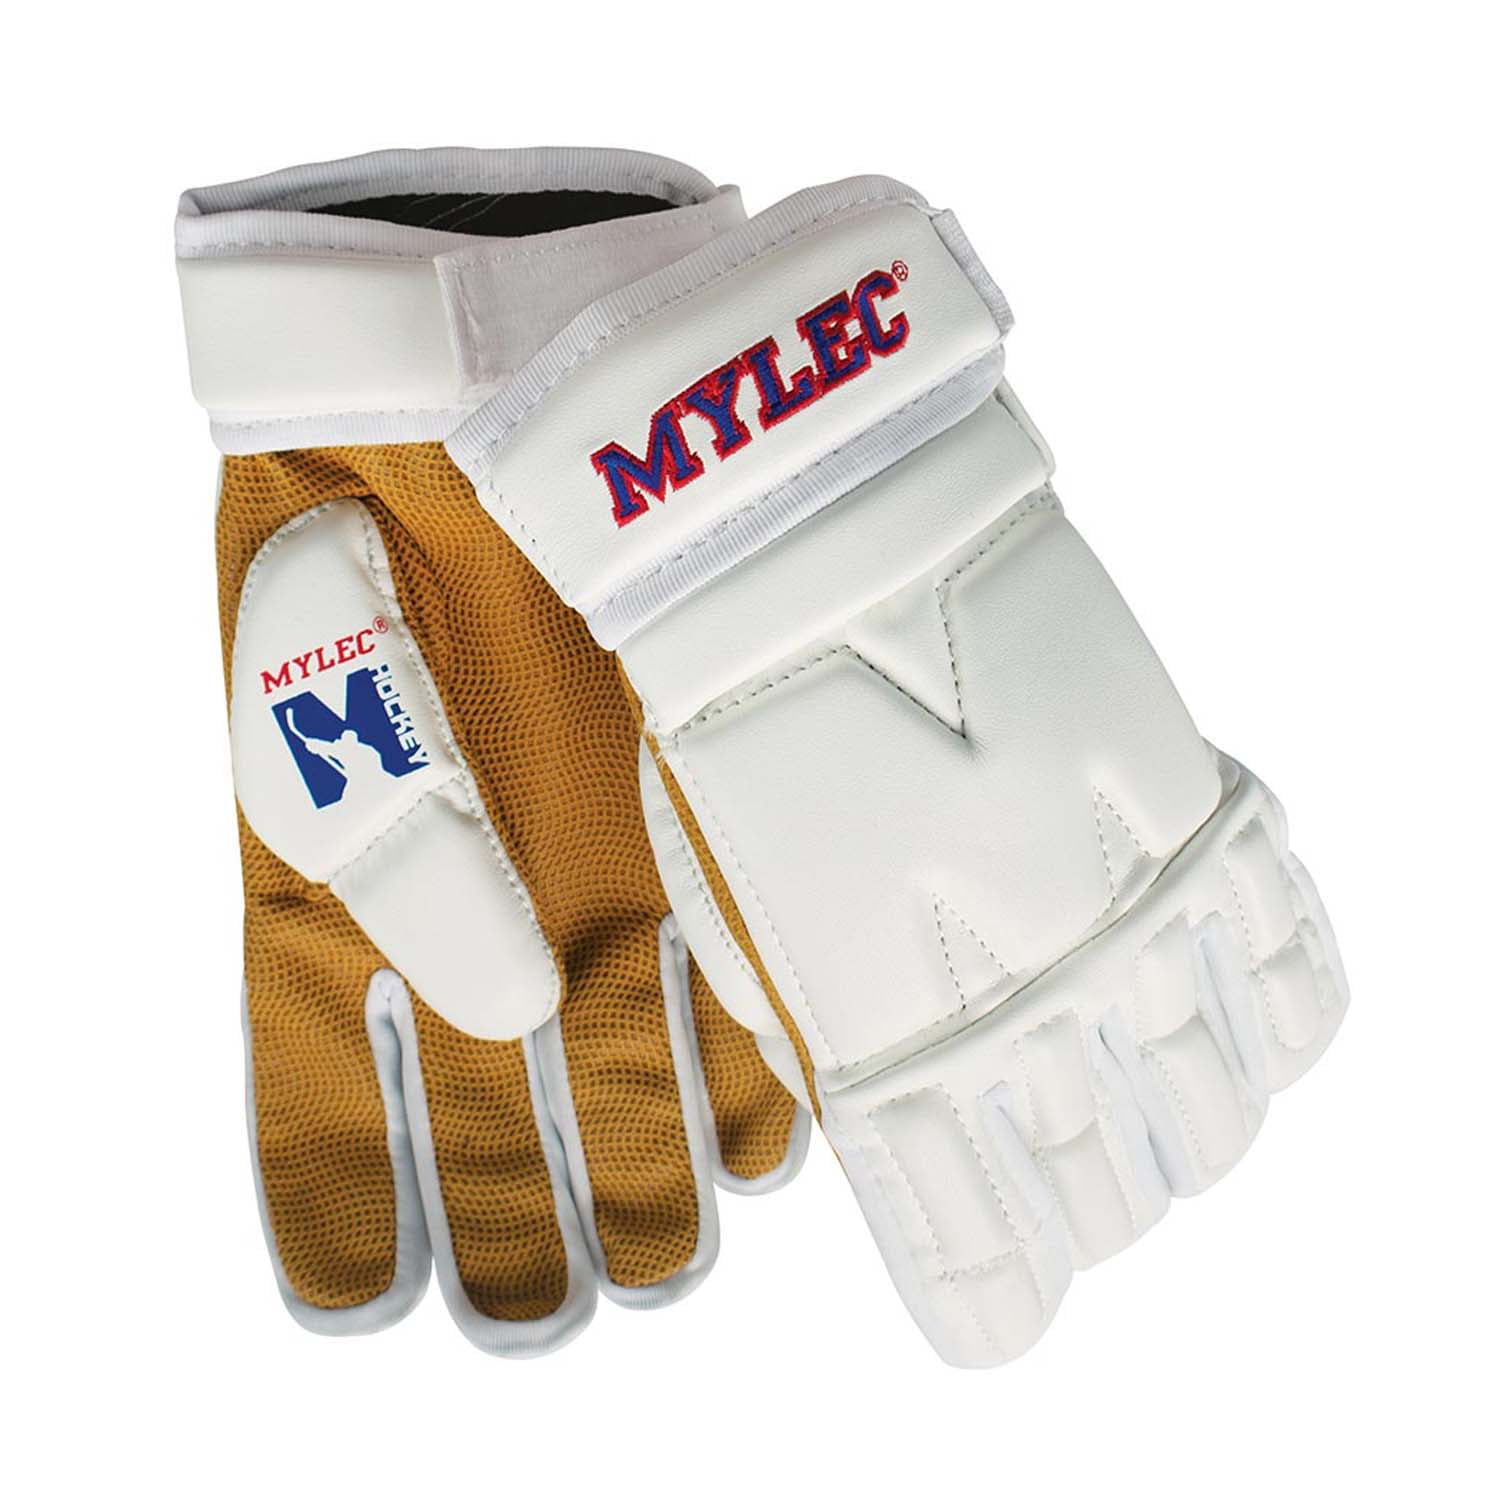 Mylec Elite Street Hockey Gloves